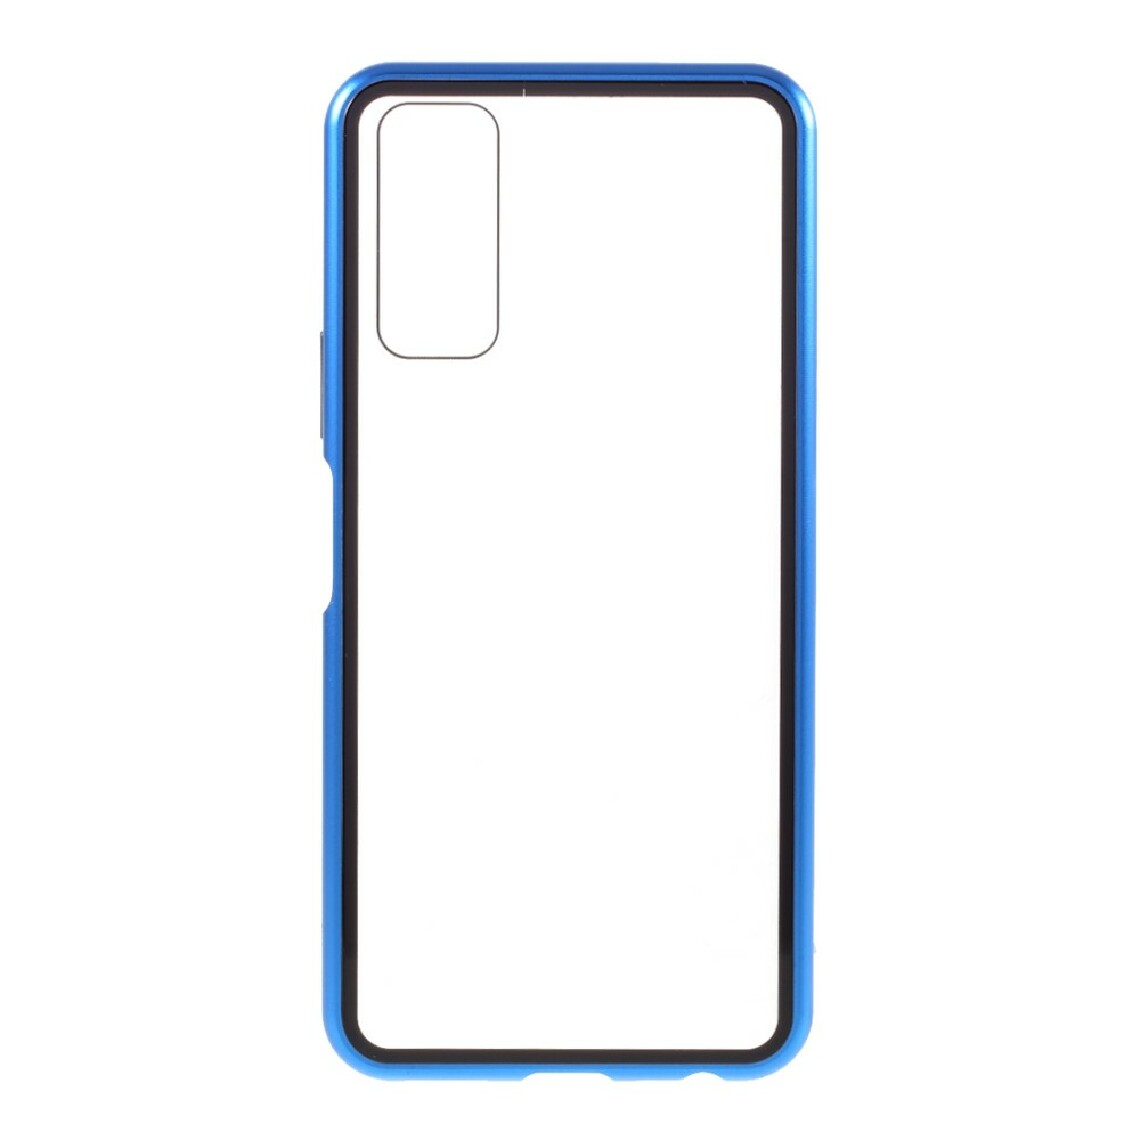 Other - Coque en cadre métallique cadre magnétique bleu pour votre Vivo Y20 - Coque, étui smartphone